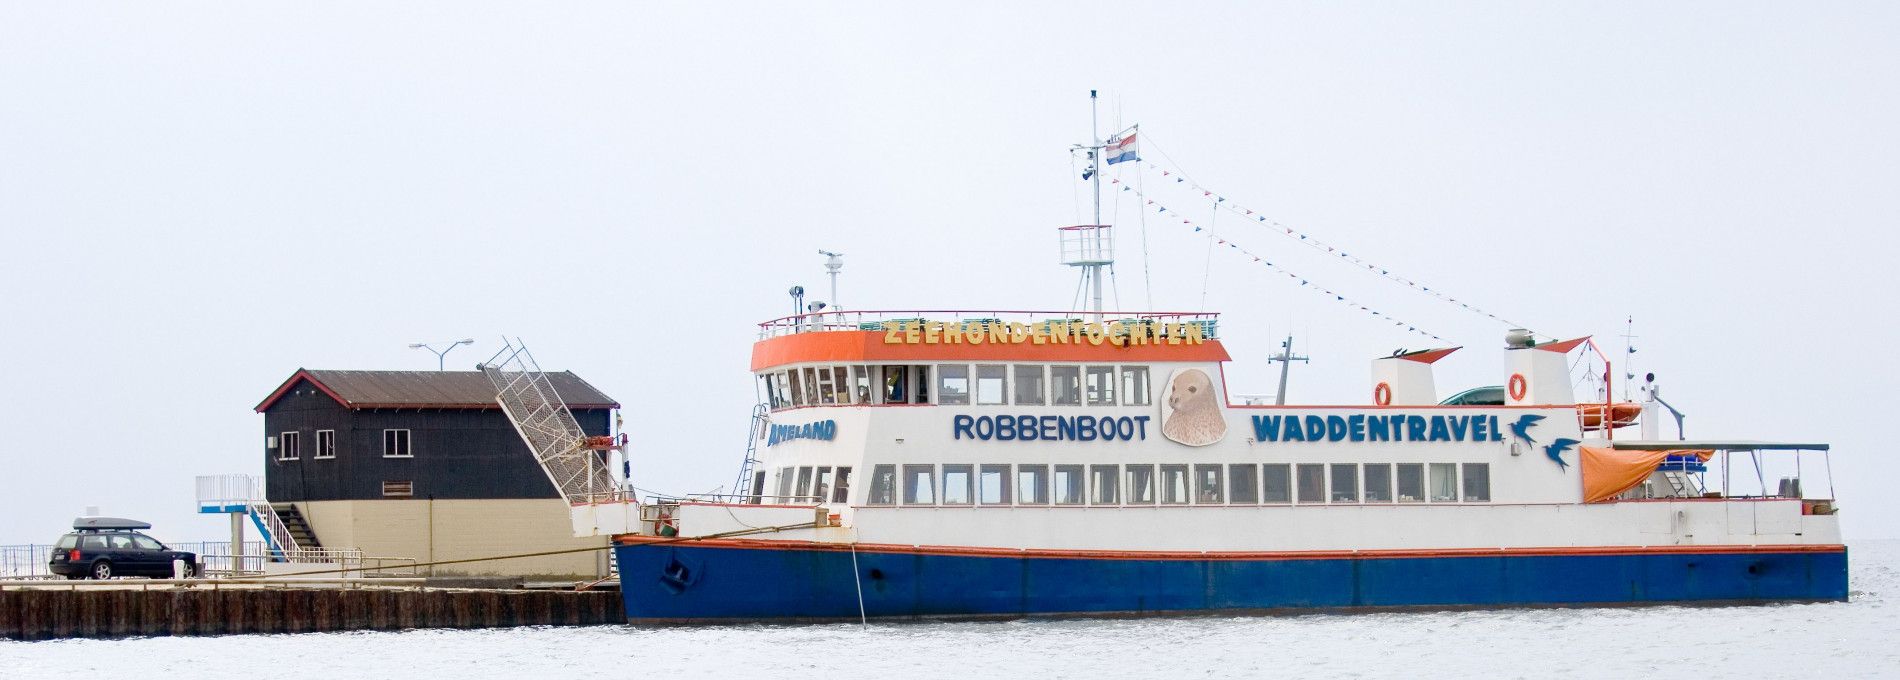 Robbenboot m.s. Ameland - VVV Ameland